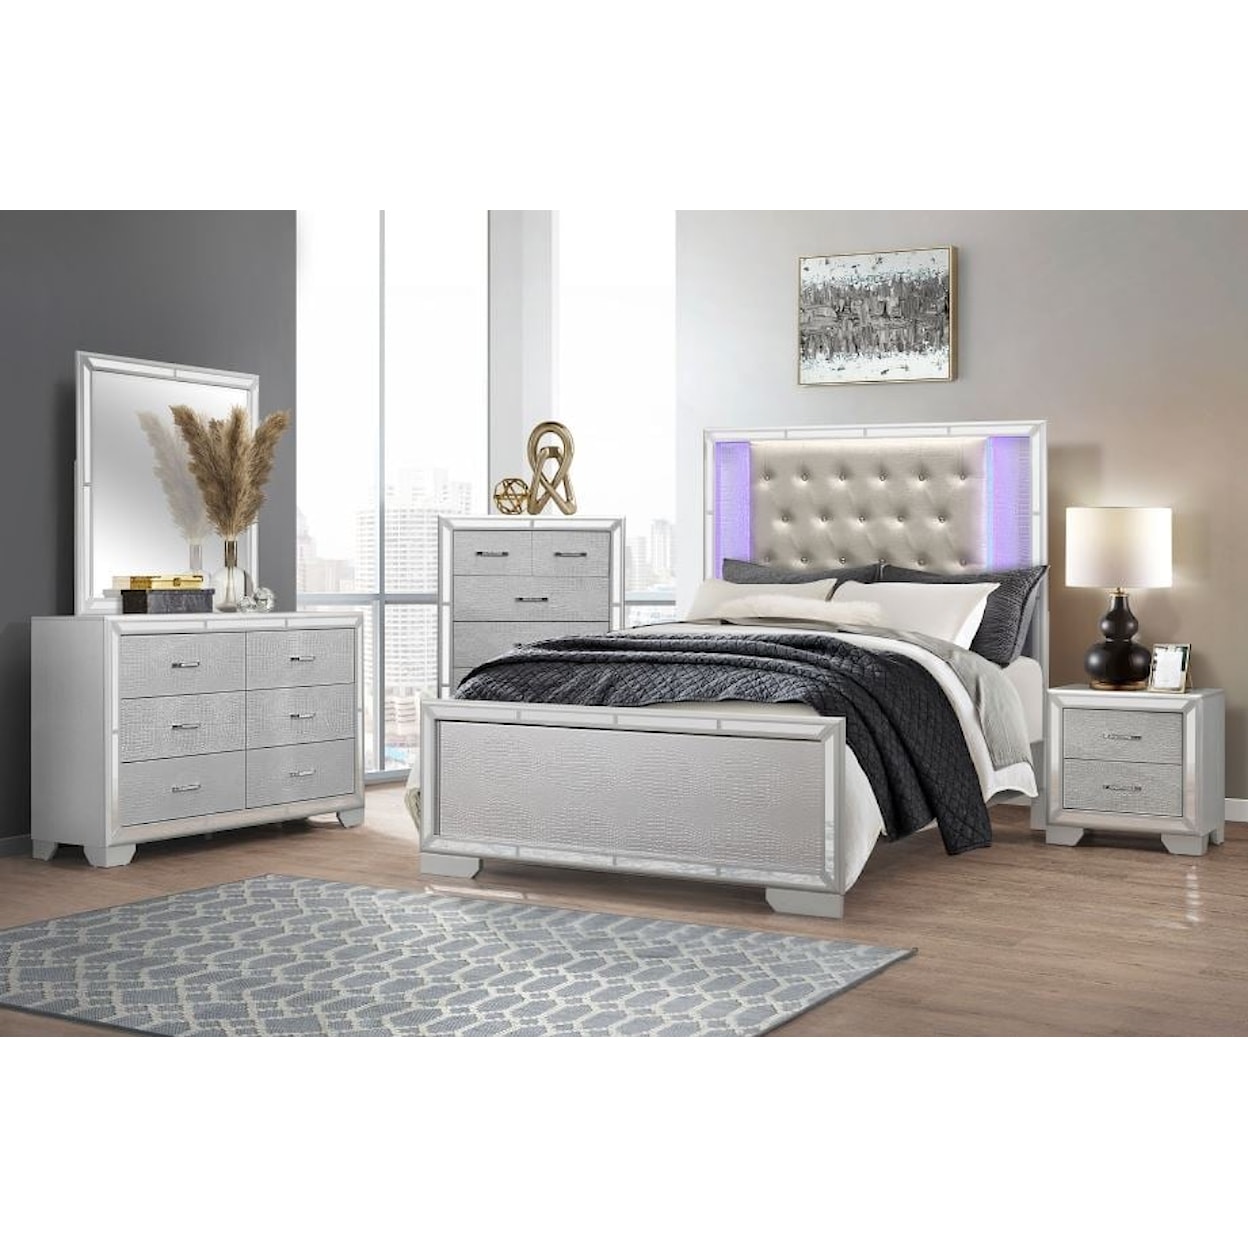 Homelegance Furniture Aveline 5-Piece King Bedroom Set